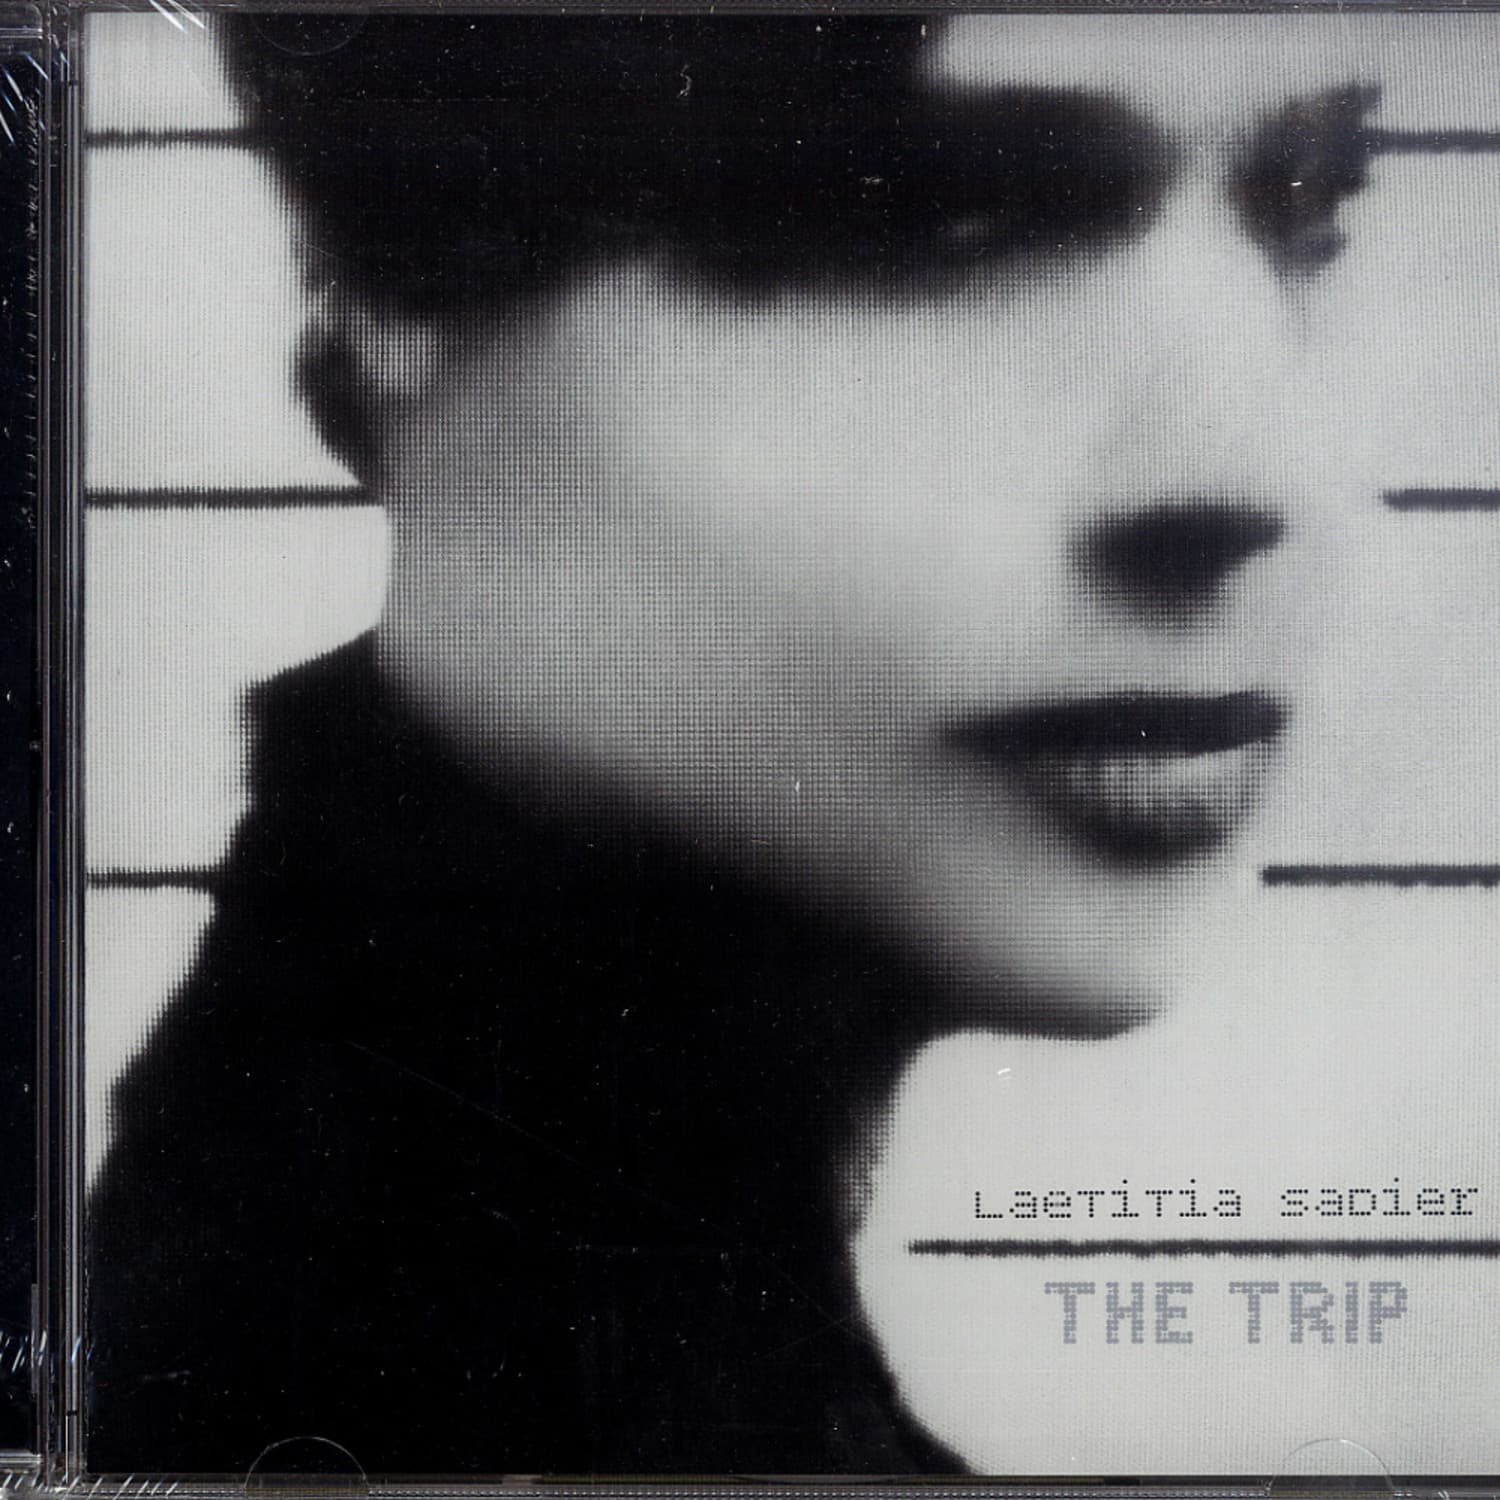 Laetitia Sadier - THE TRIP 